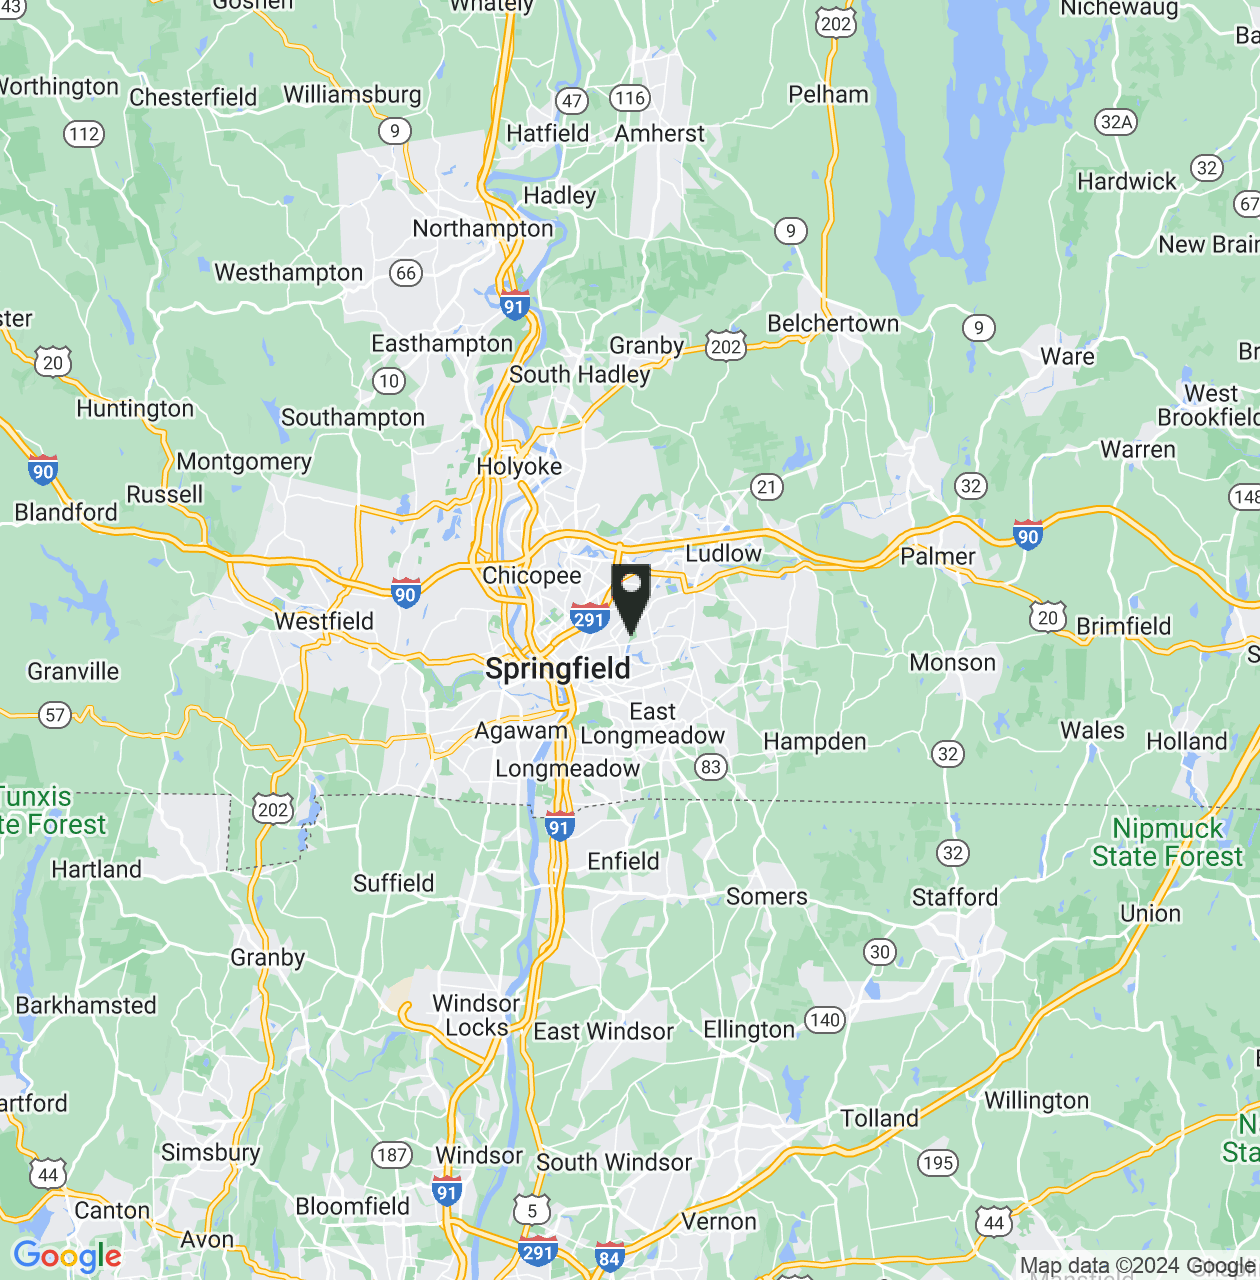 Map showing Hampden County, Massachusetts